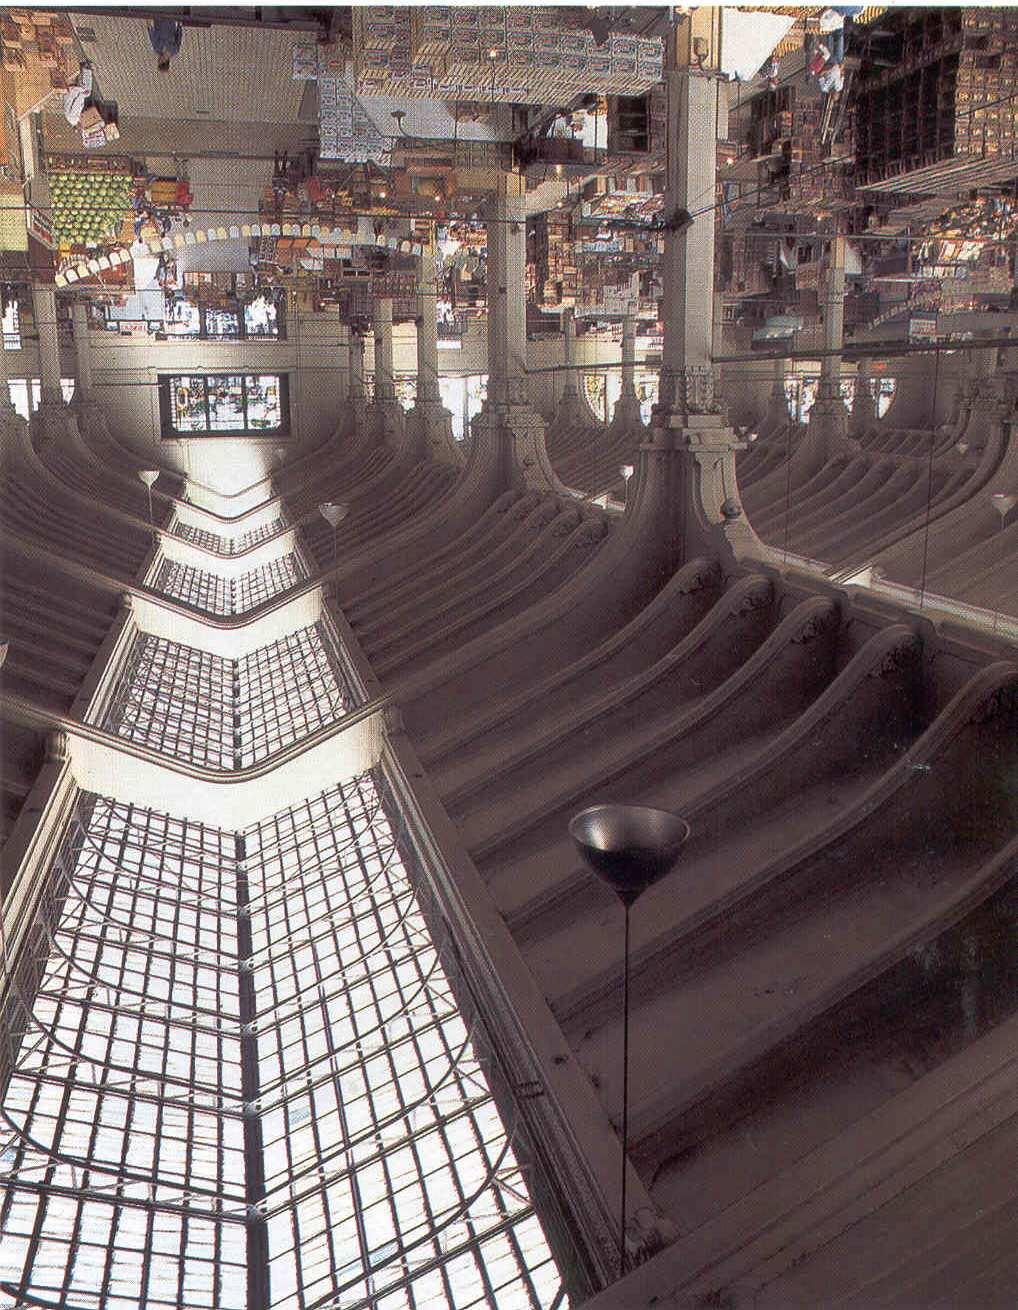 40 FIGURA 6 Exemplo de Teto com dupla inclinação - Mercado Municipal São Paulo, SP (Vianna & Gonçalves, 2001).